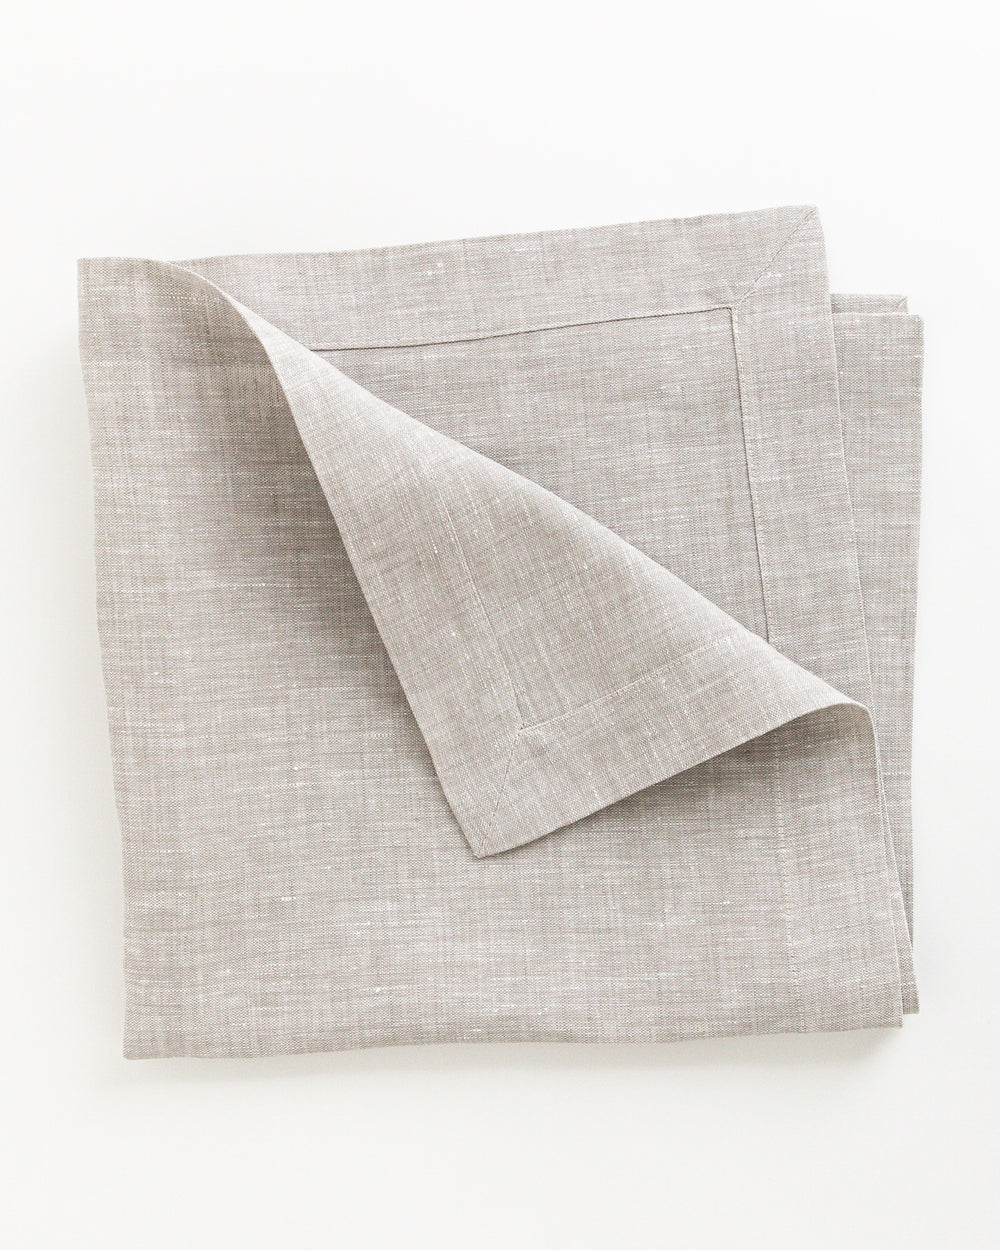 Folded natural beige linen napkin